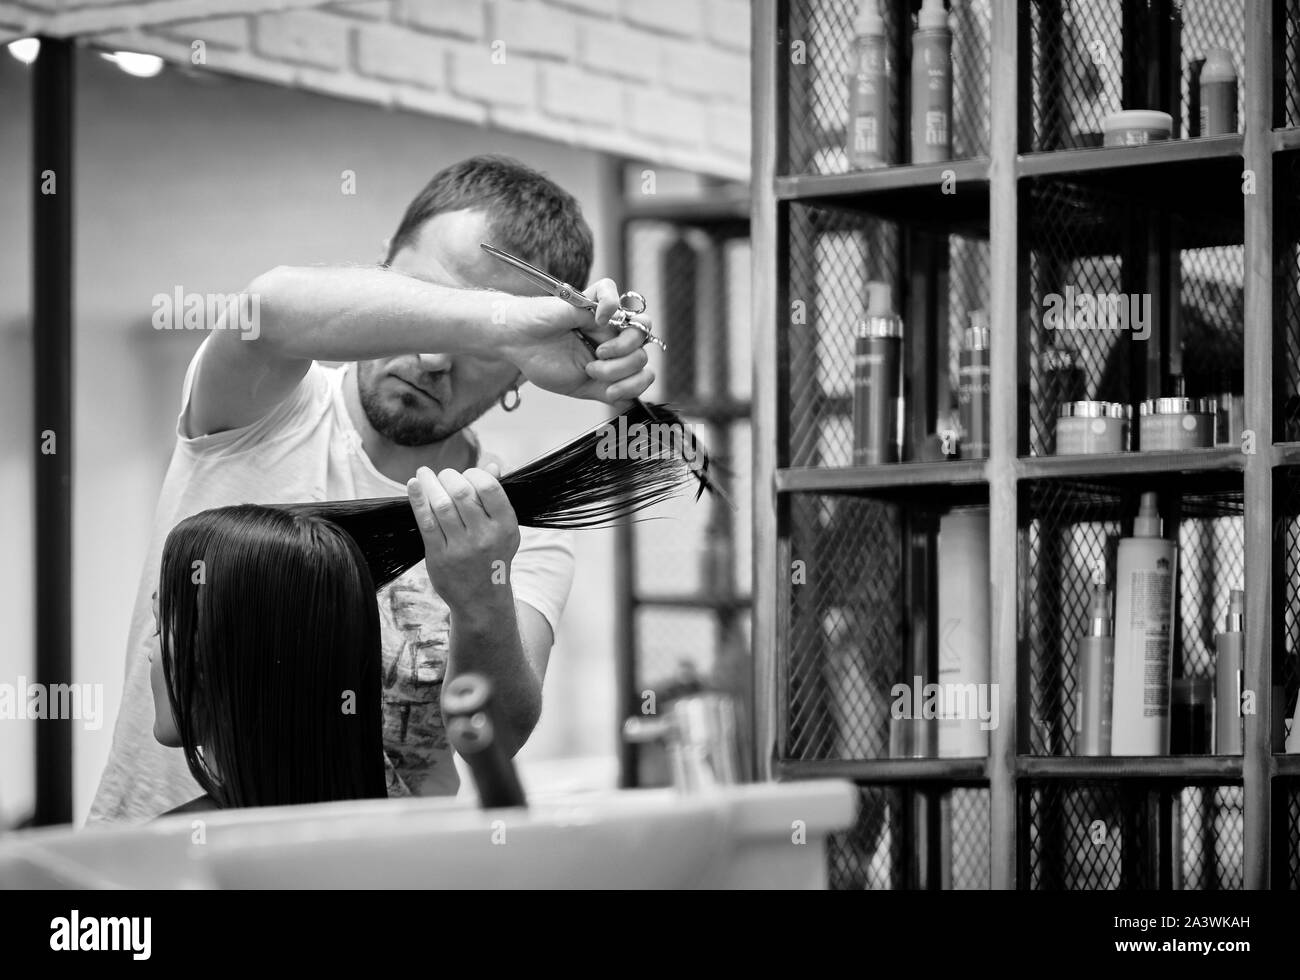 Moscou, Russie - 10 Oct 2019 : coiffeur professionnel travaillant avec le client dans le salon. Coiffeur homme et femme client en beauté. BW Black & White Banque D'Images